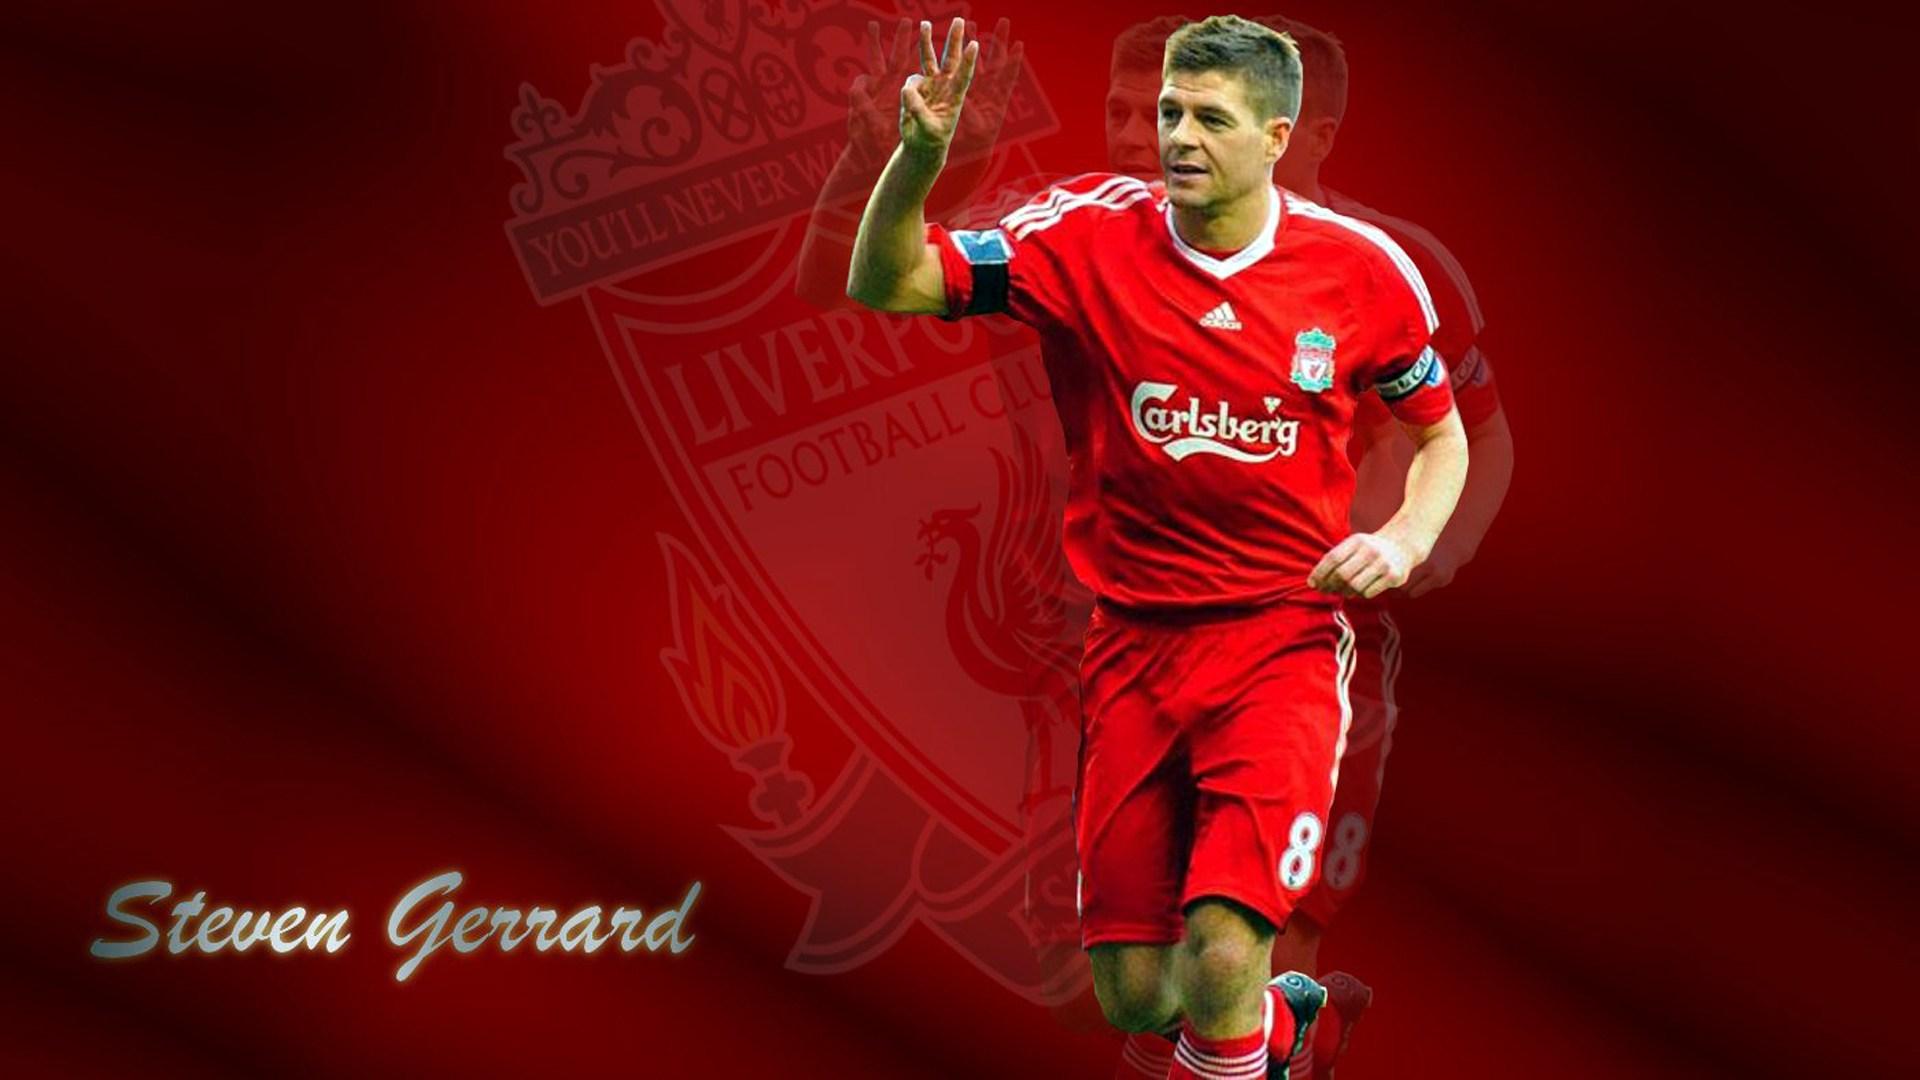 Steven Gerrard Quotes Wallpaper Liverpool F C Image Steven Gerrard